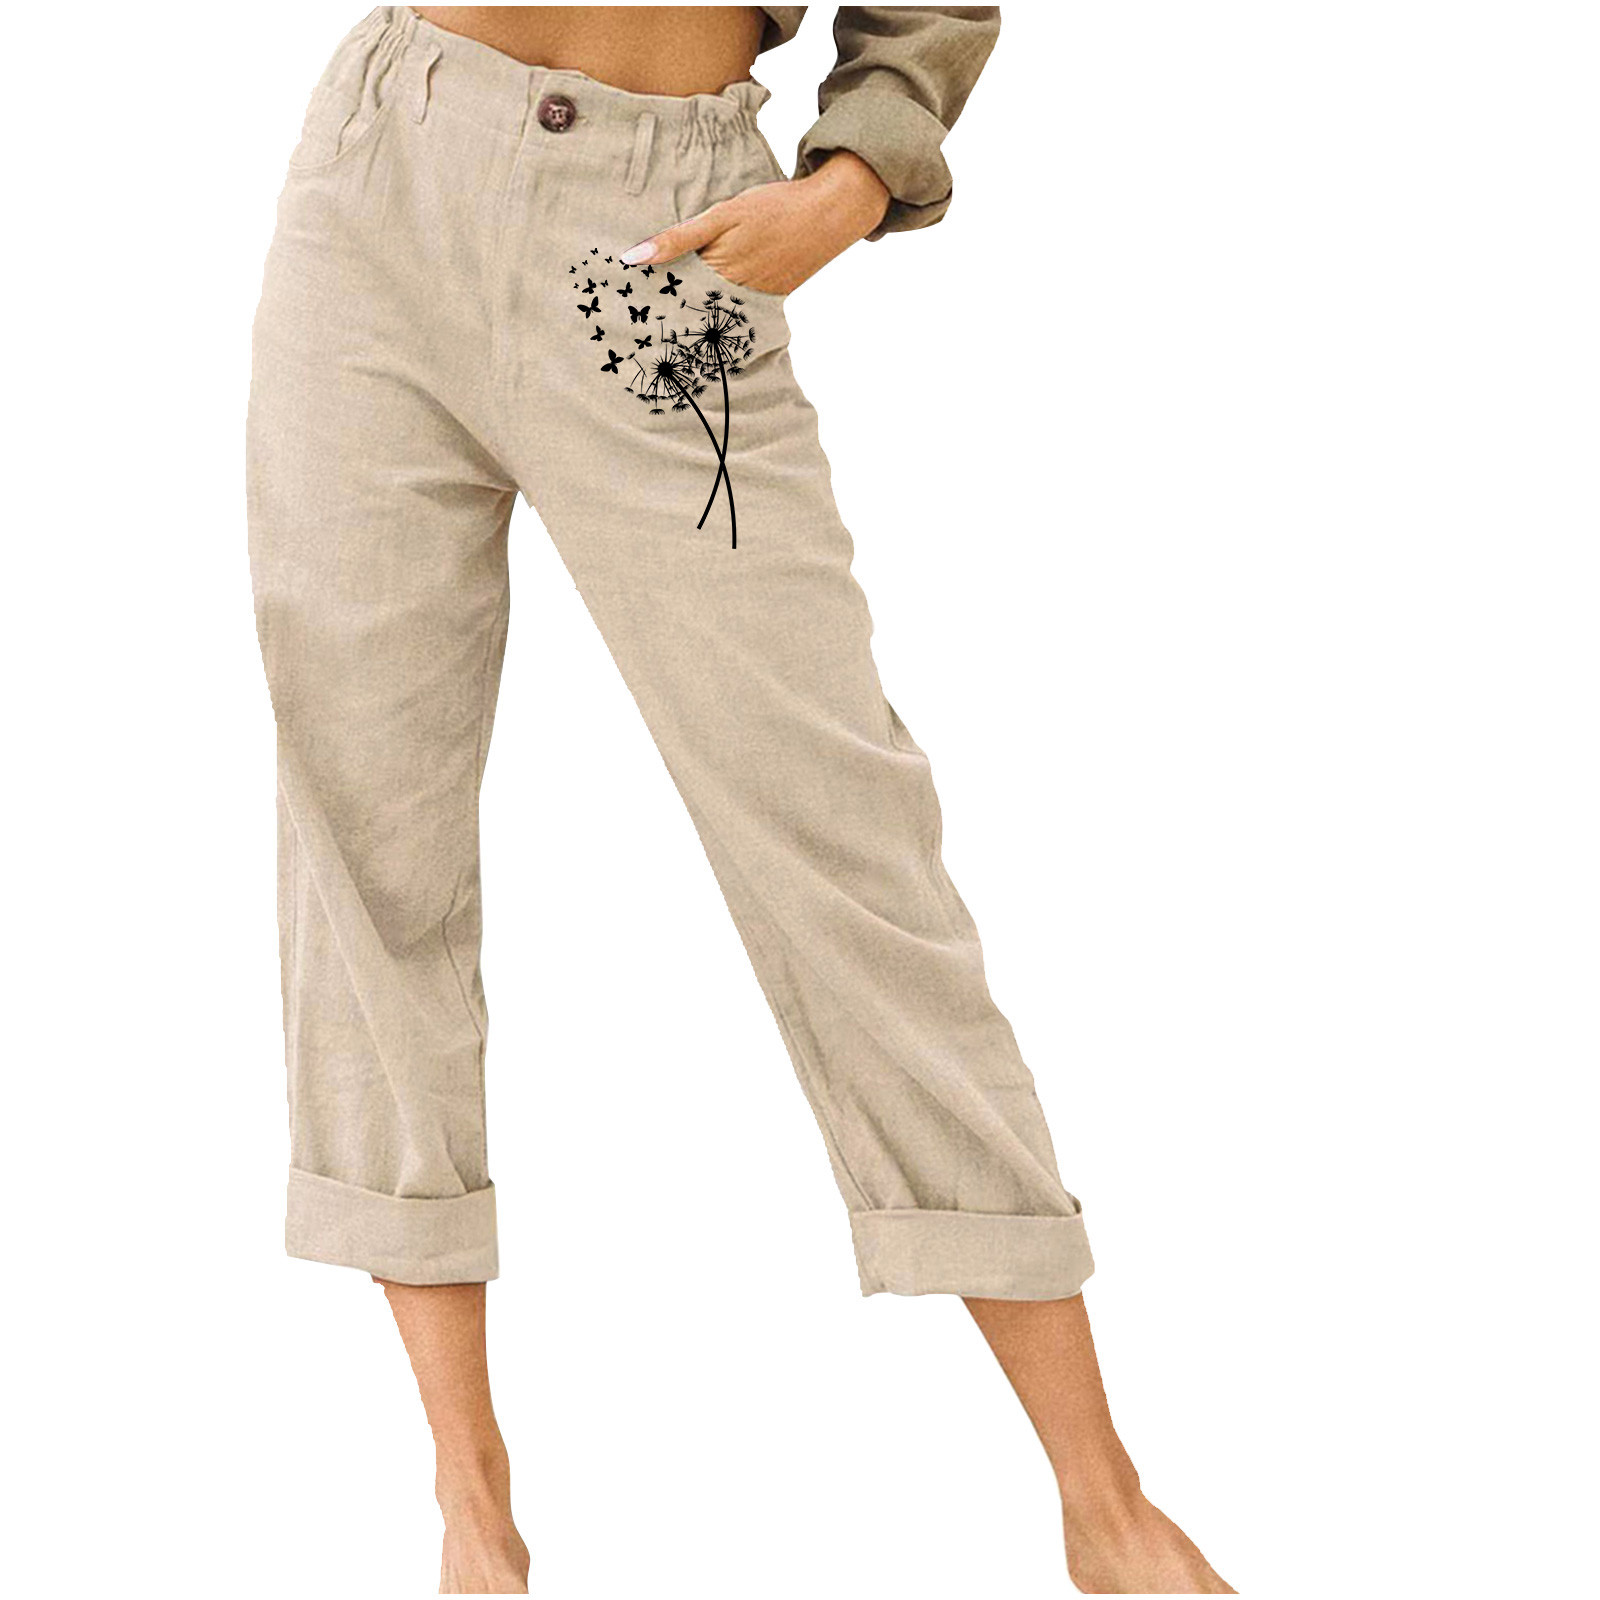 fartey Womens Cotton Linen Capri Pants Casual Dandelion Graphic ...